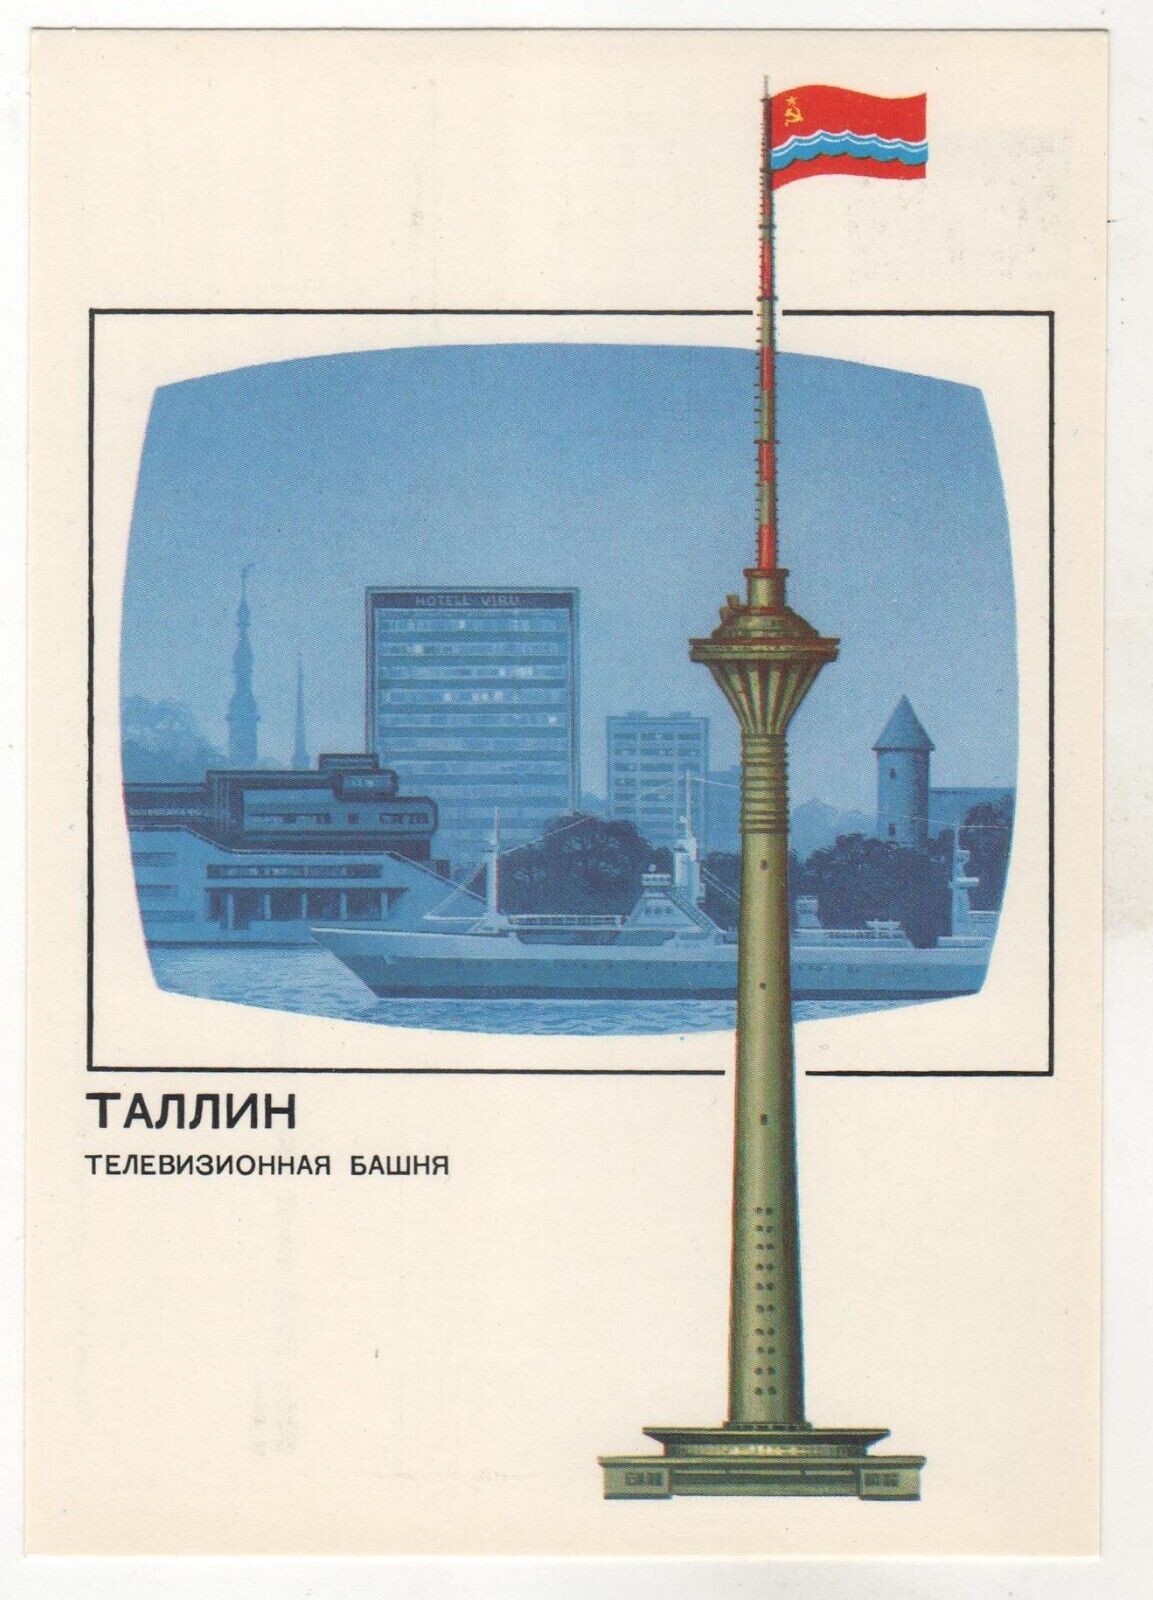 1988 Tallinn Estonia TV tower Flag USSR Russia Soviet OLD Russian postcard